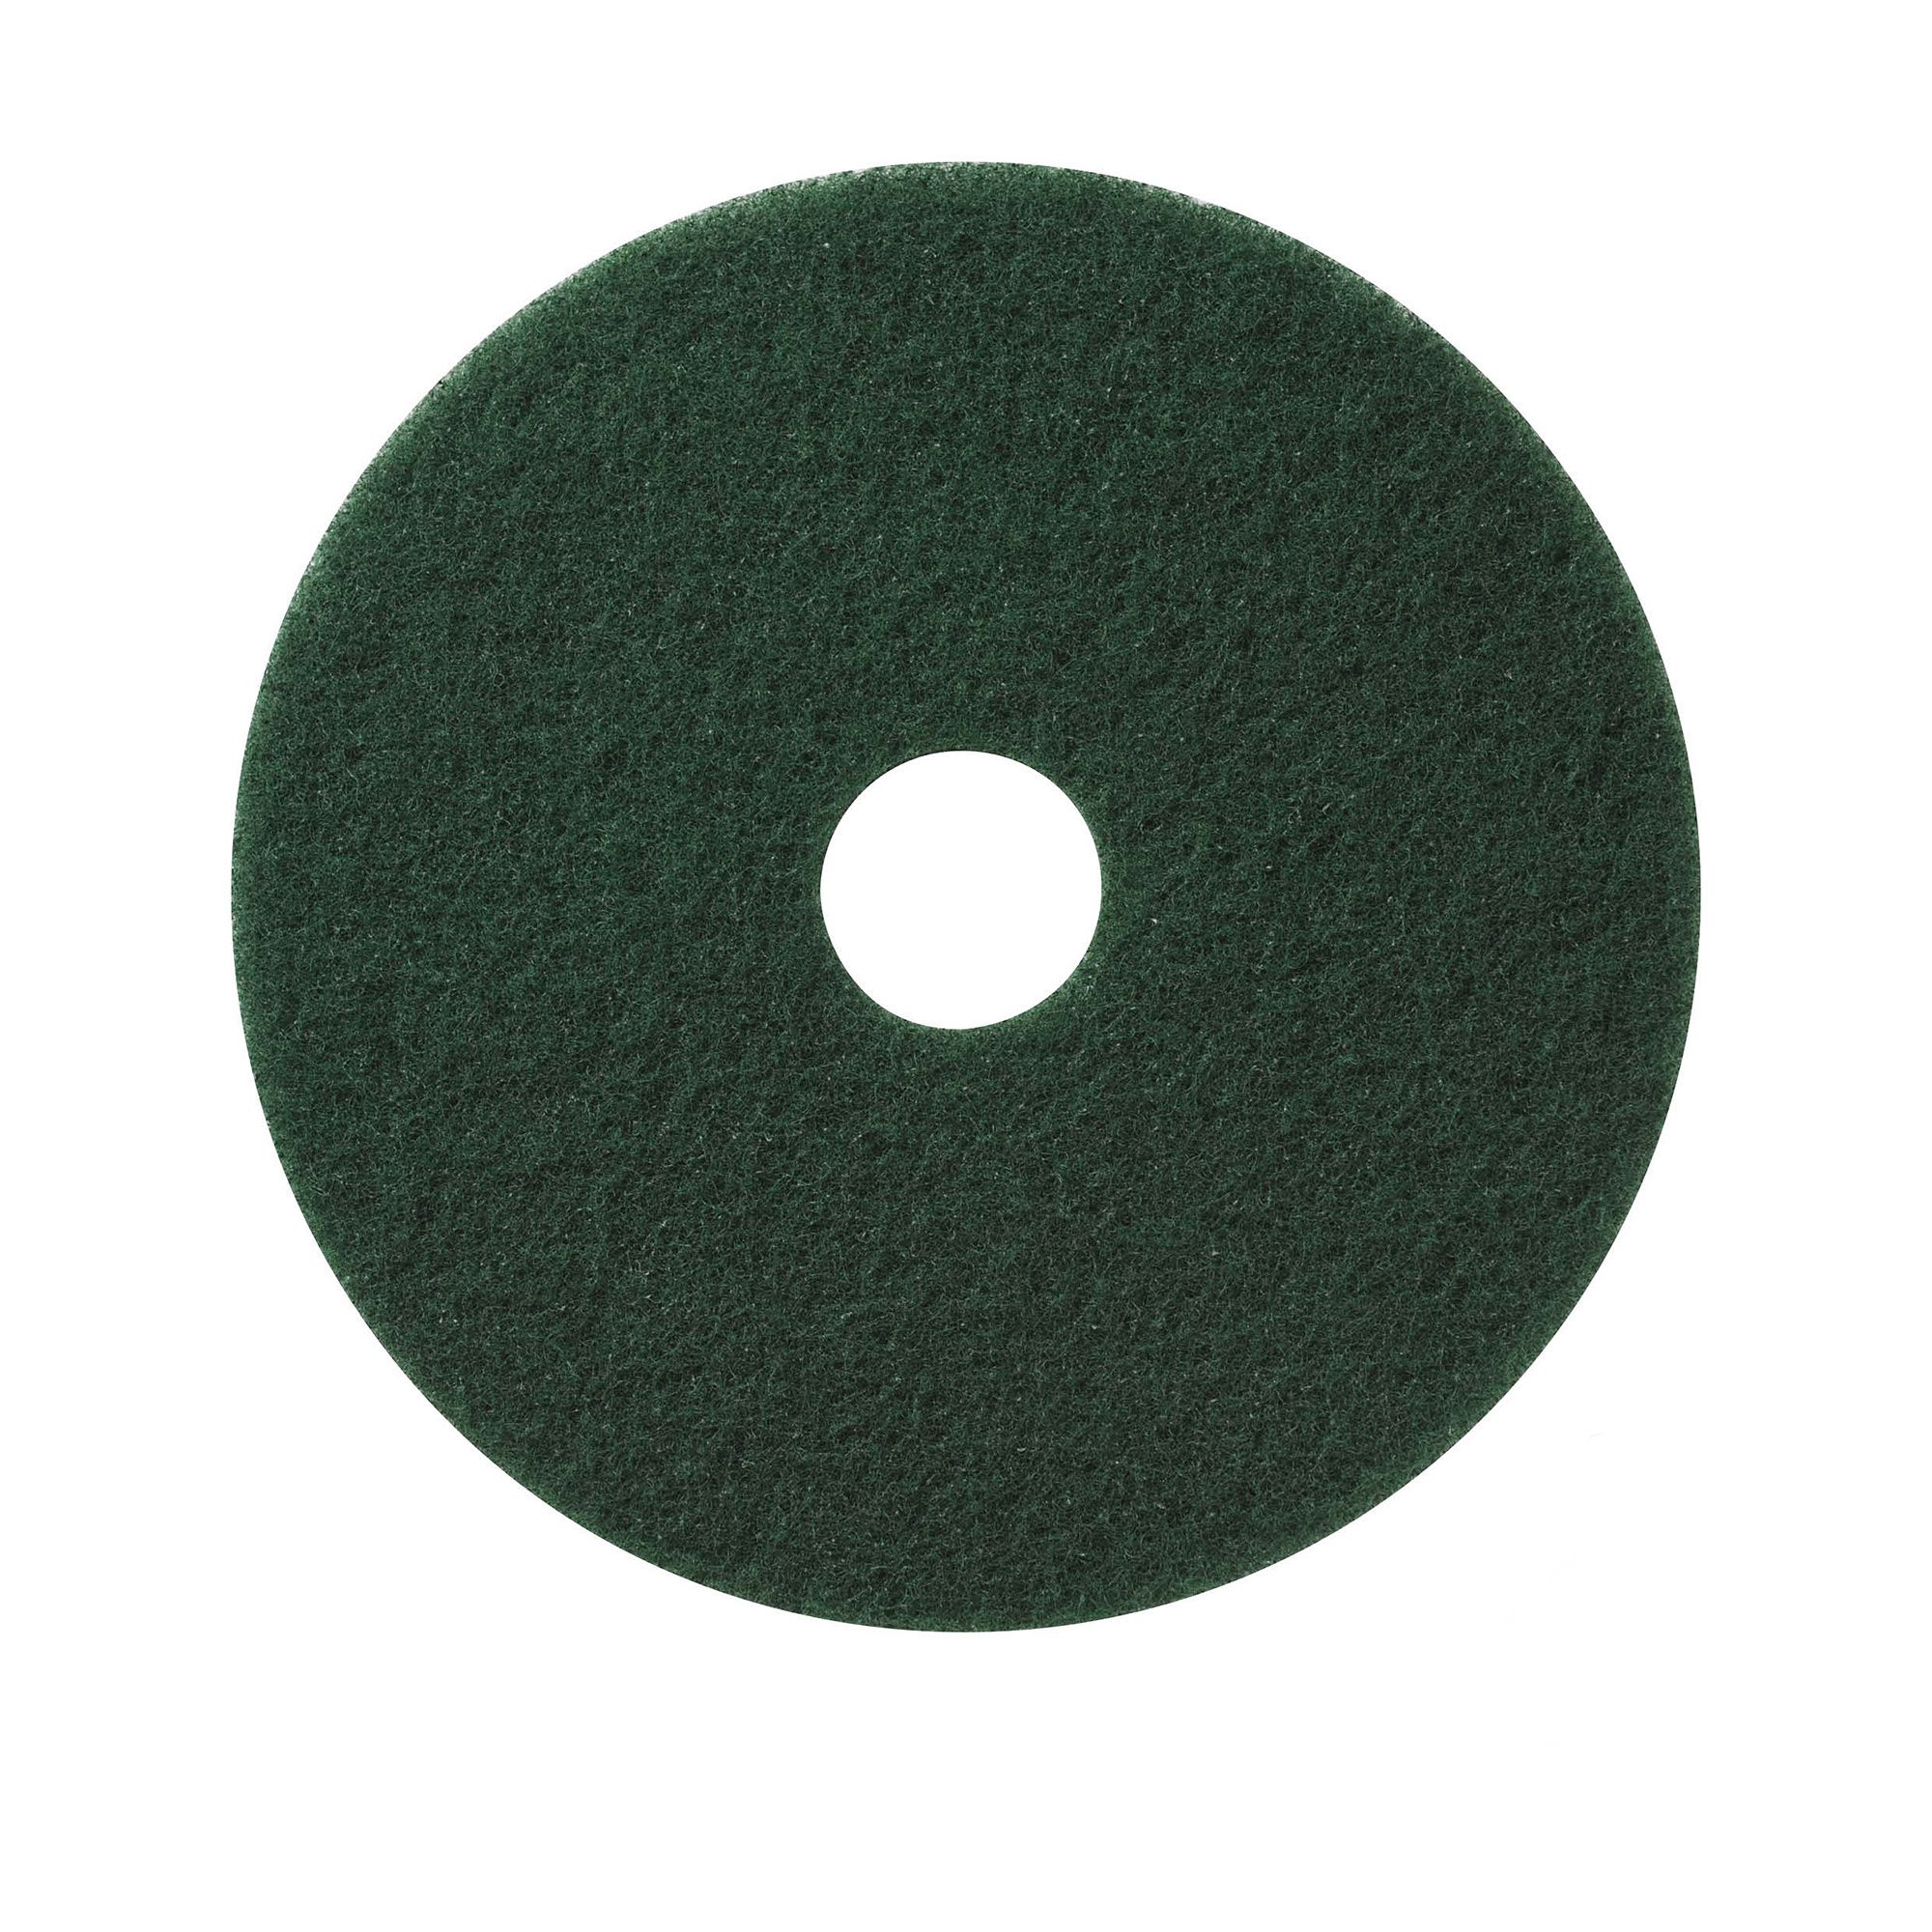 NuPad groen (zwaar schrobben), per 5 stuks, 17 inch / 432 mm